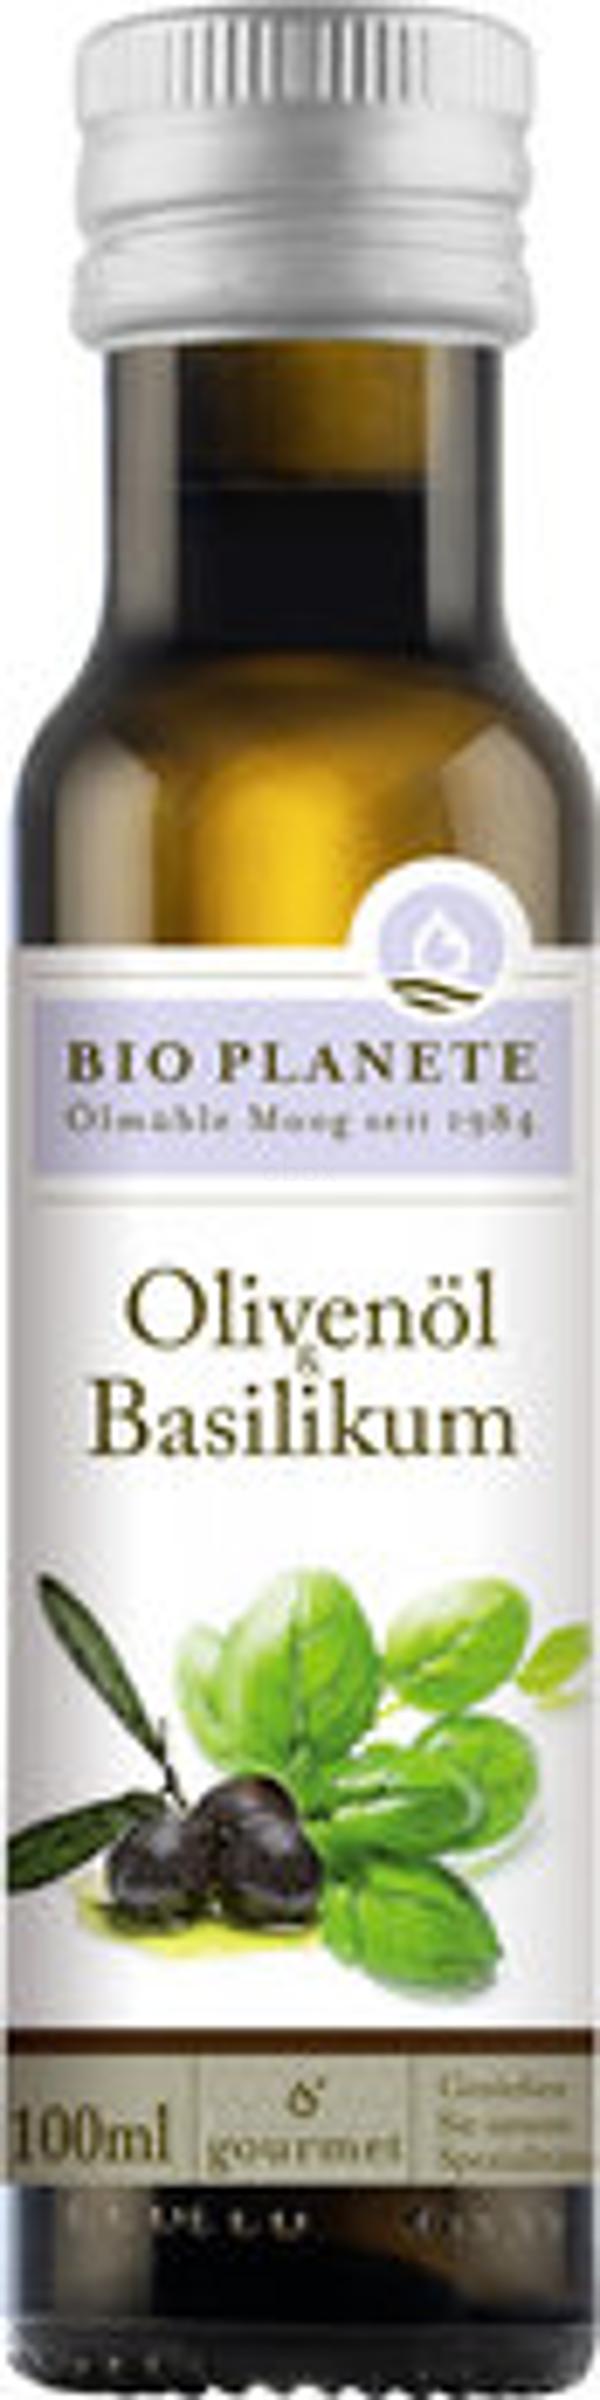 Produktfoto zu Olivenöl mit Basilikum